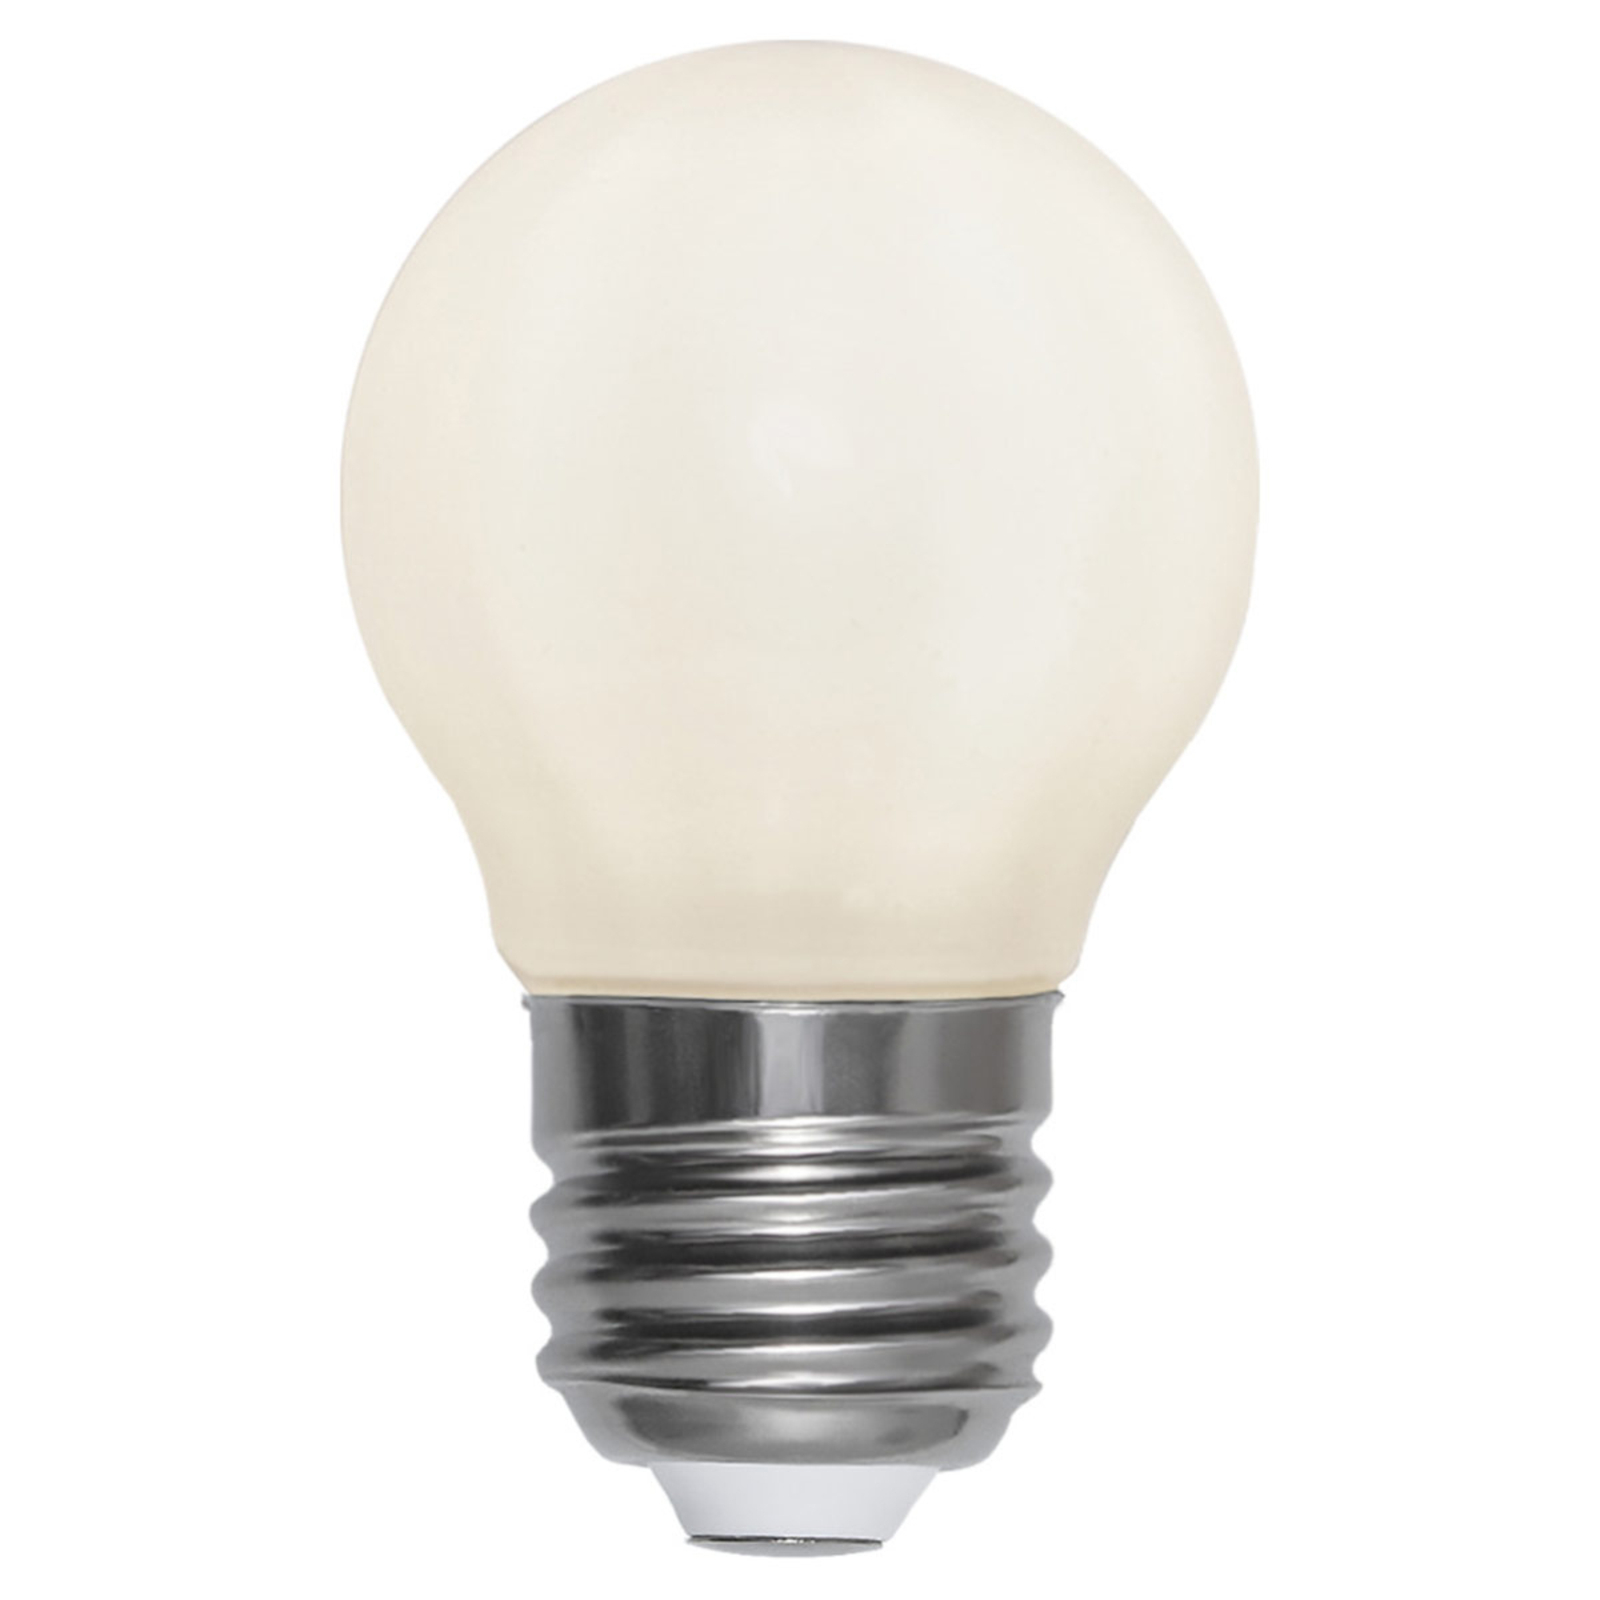 LED lamp E27 MiniGlobe 3W 2700K Ra90 opaal 3W